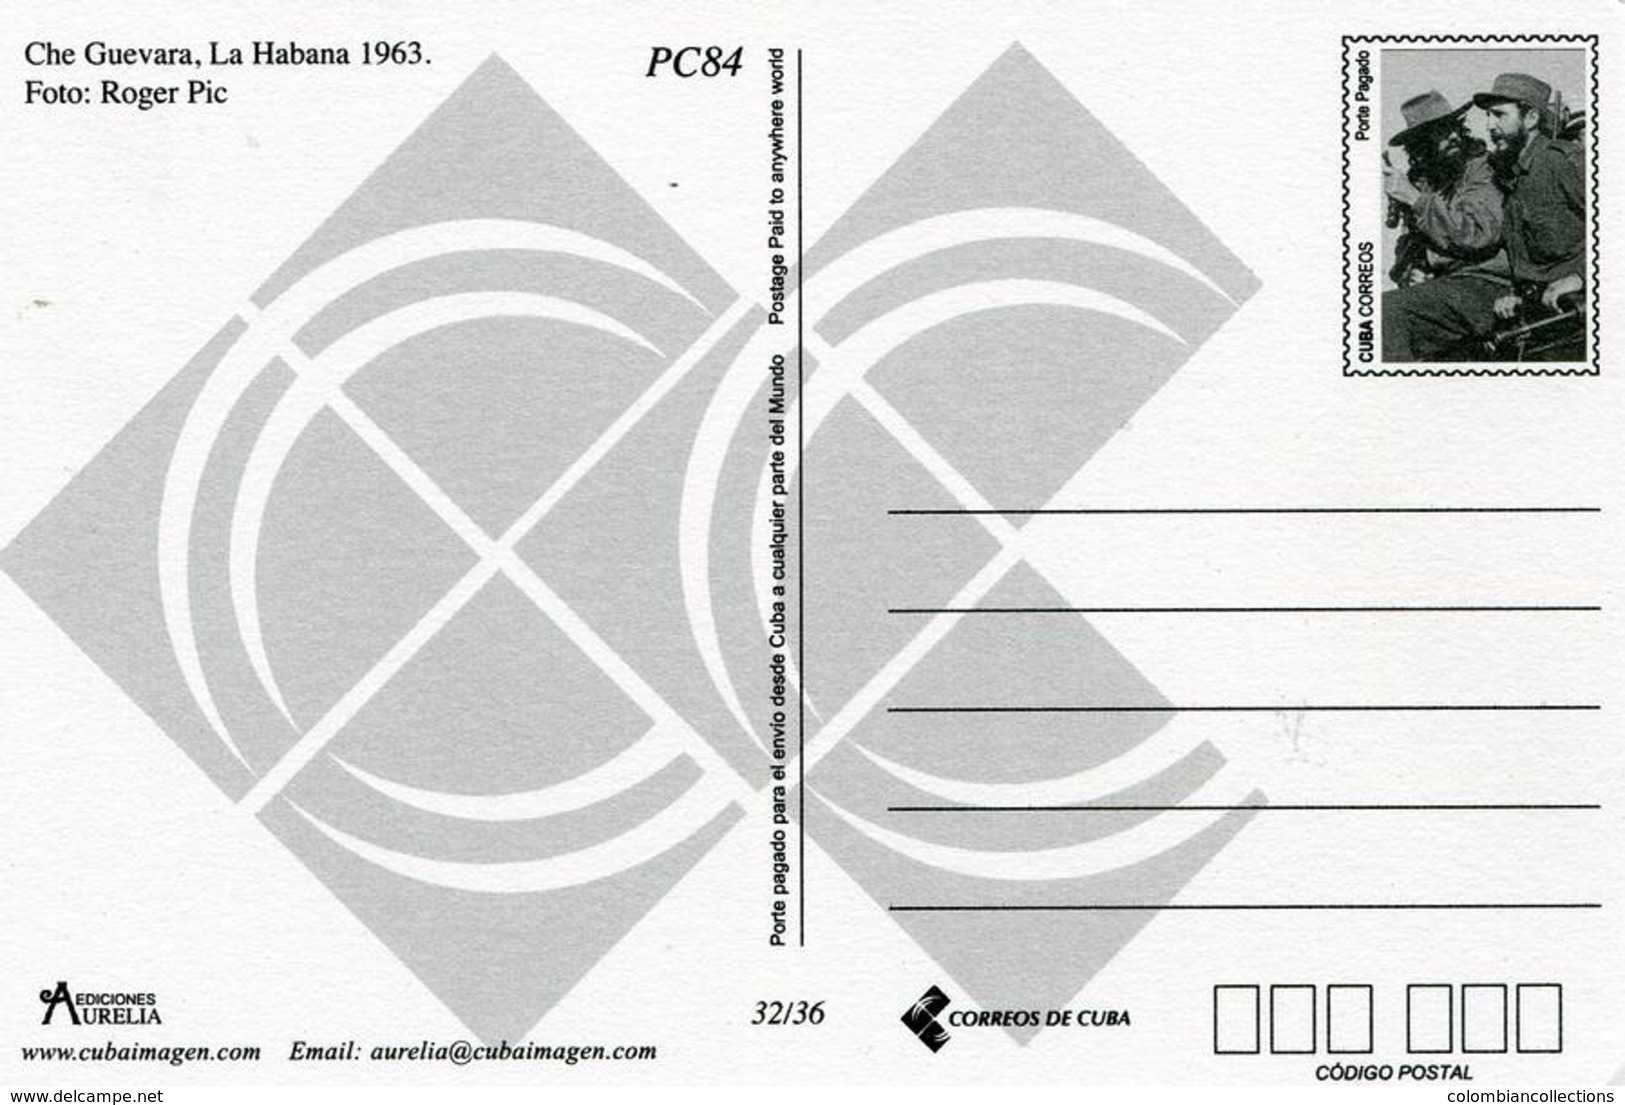 Lote PEP1301, Cuba, Entero Postal, Postcard, Stationery, 2013, Ediciones Aurelia, 32/36, Che Guevara, La Habana, 1963 - Maximum Cards